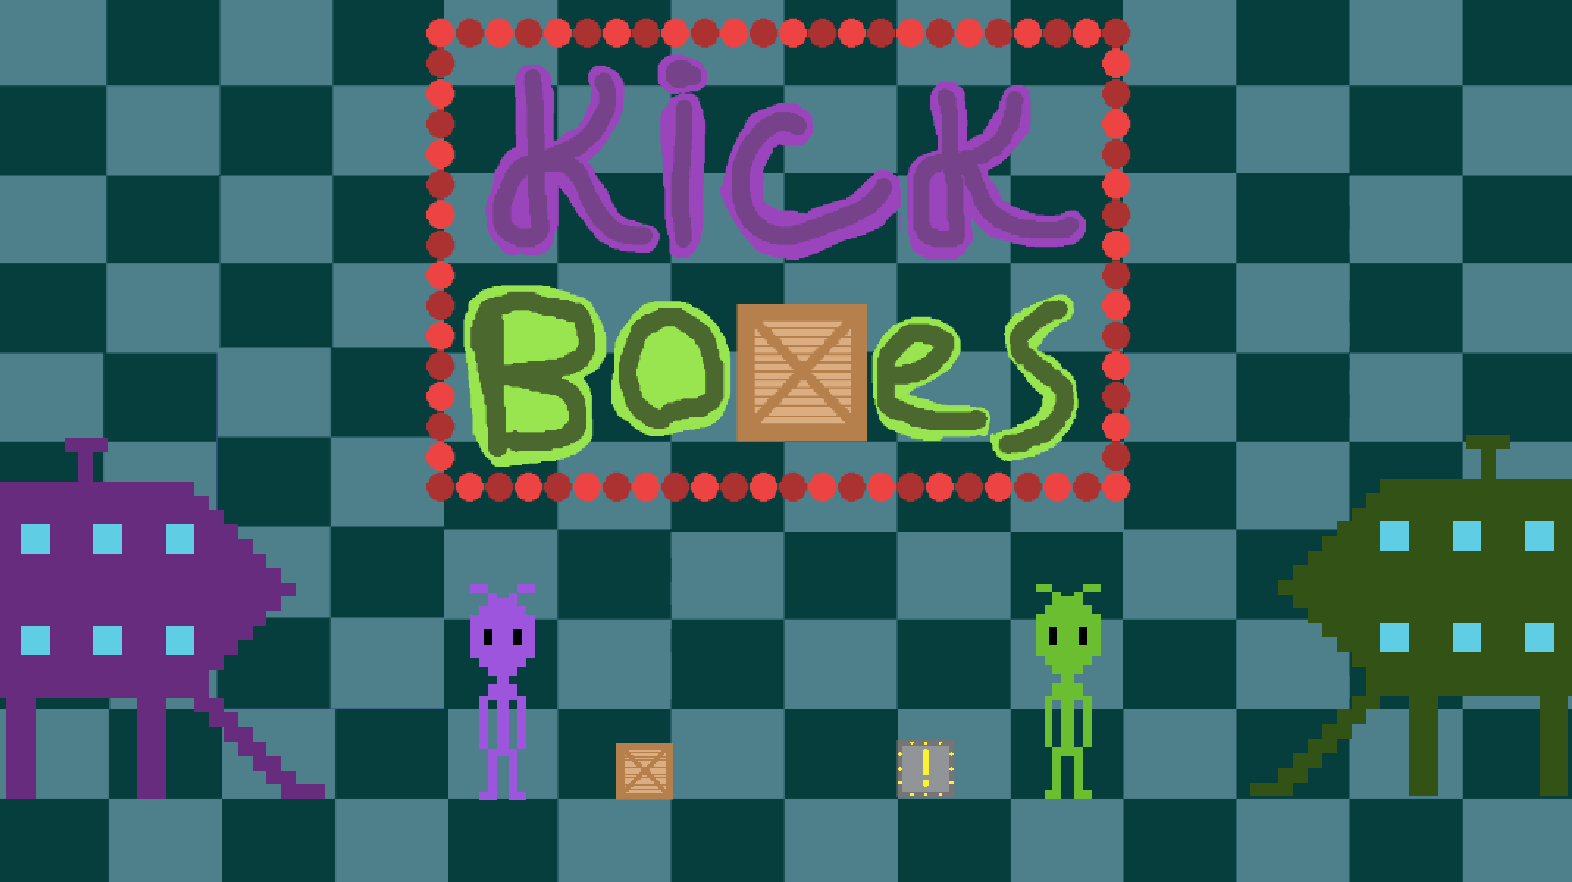 KickBoxes